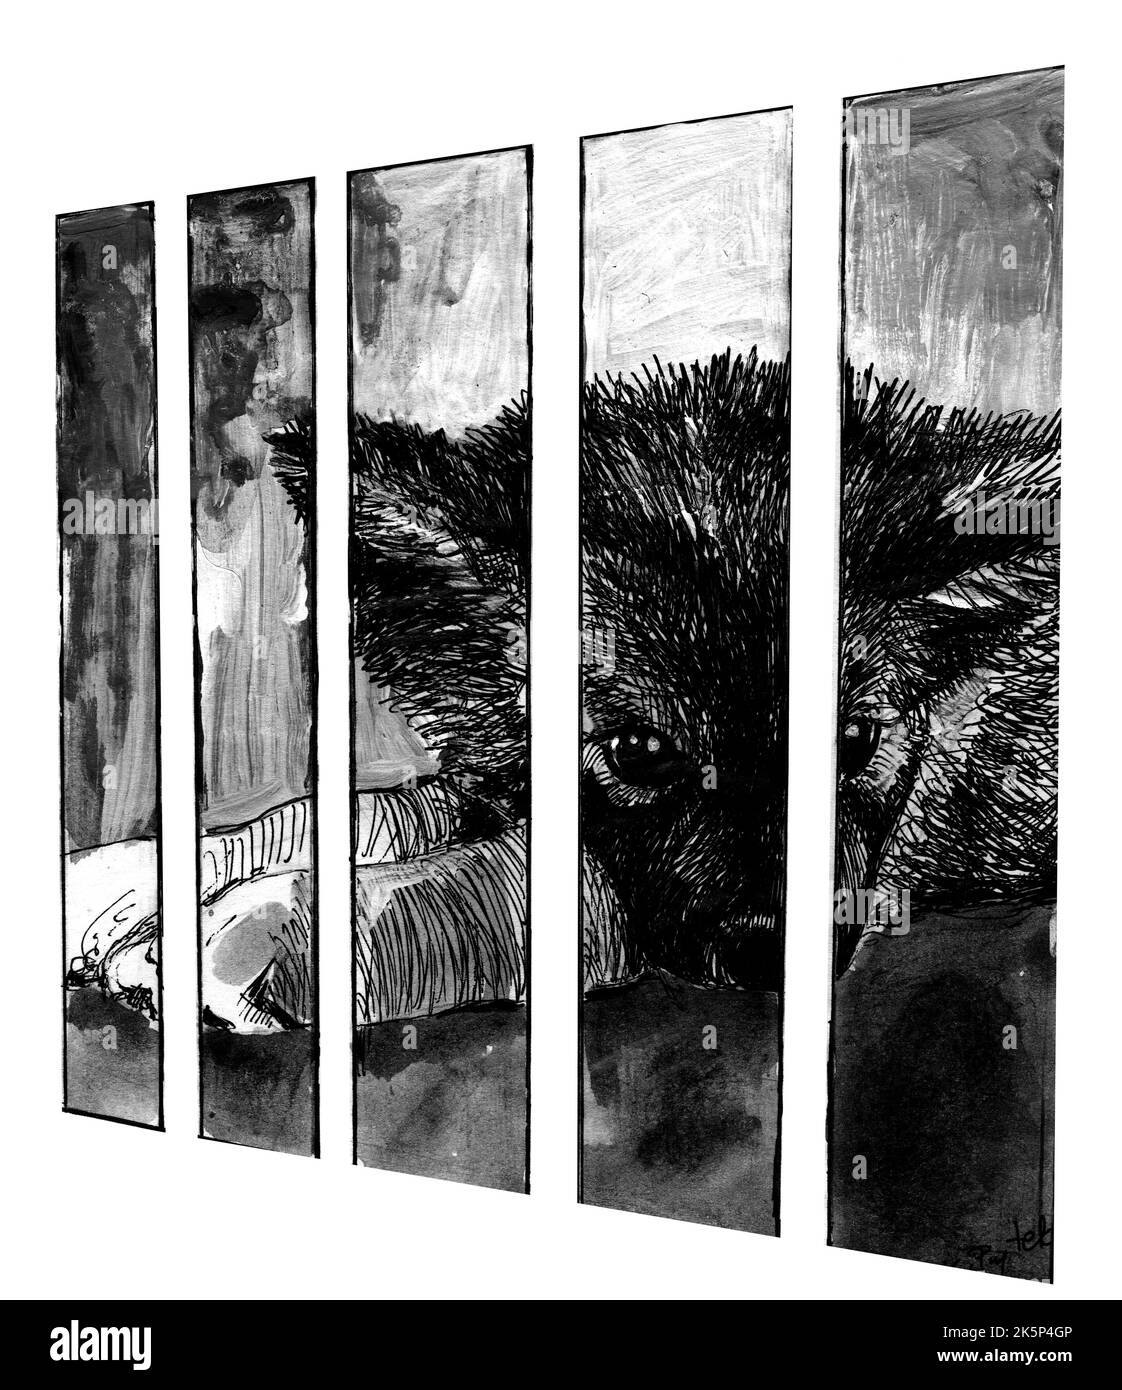 Un chiot est malheureusement enfermé dans une cage. Illustration monochrome faite à la main avec plume et peinture. Banque D'Images